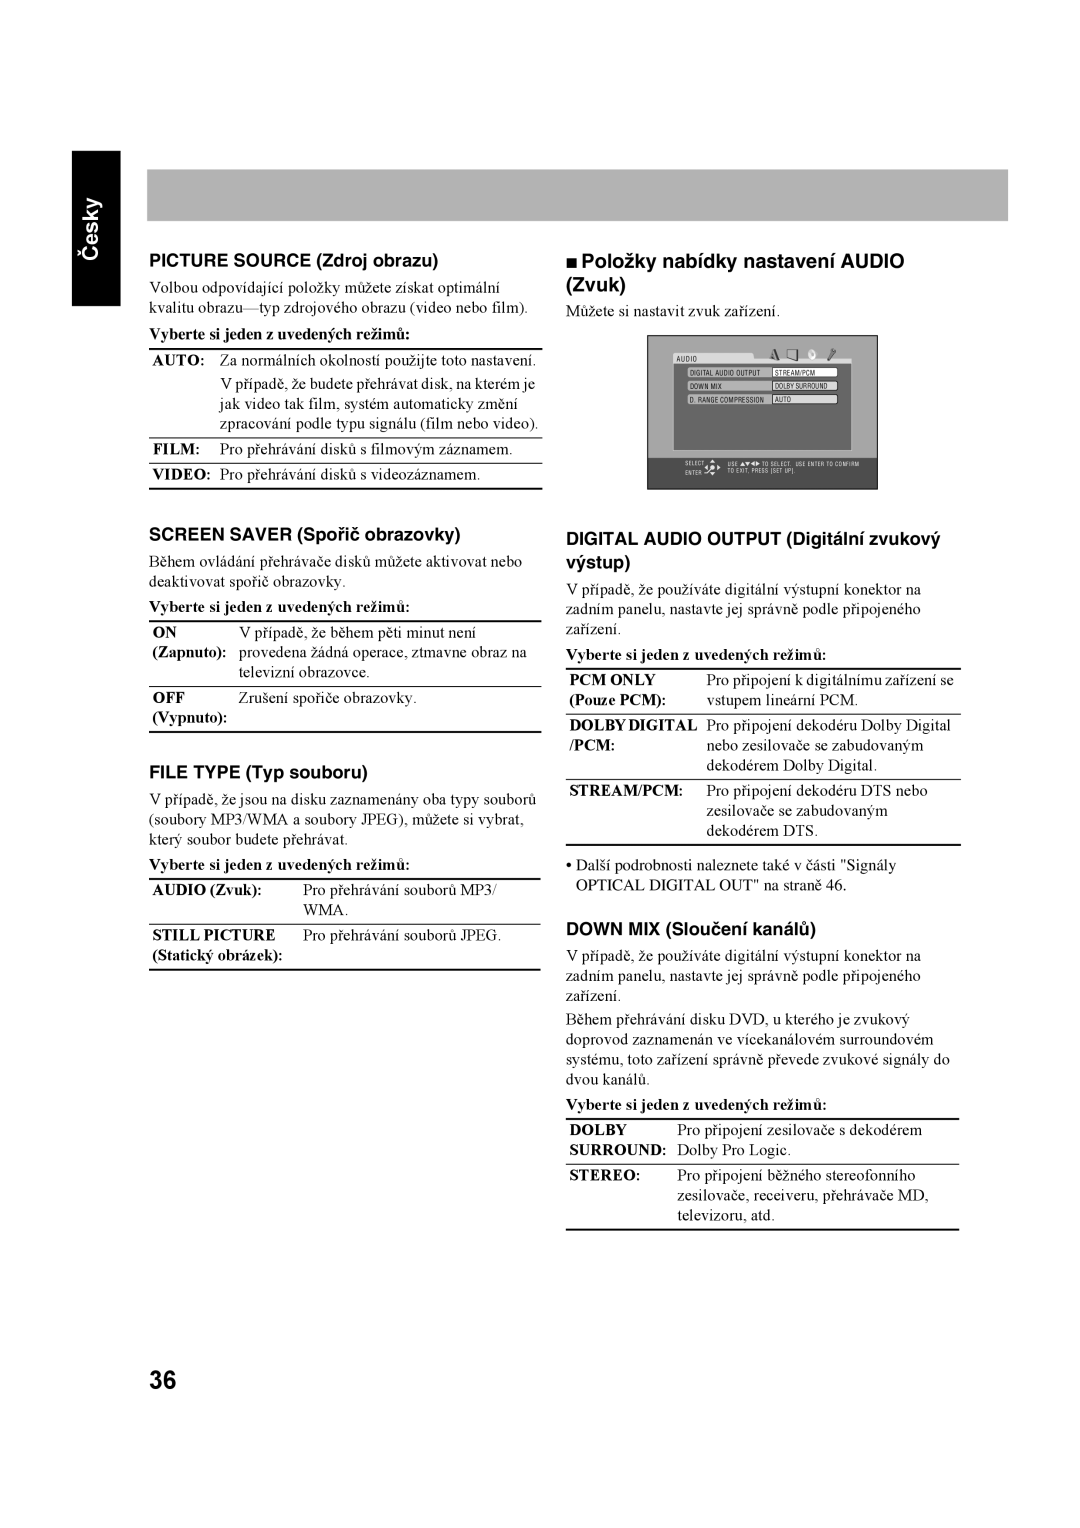 JVC SP-UXS77 manual Položky nabídky nastavení AUDIO Zvuk, PICTURE SOURCE Zdroj obrazu, SCREEN SAVER Spořič obrazovky, Česky 